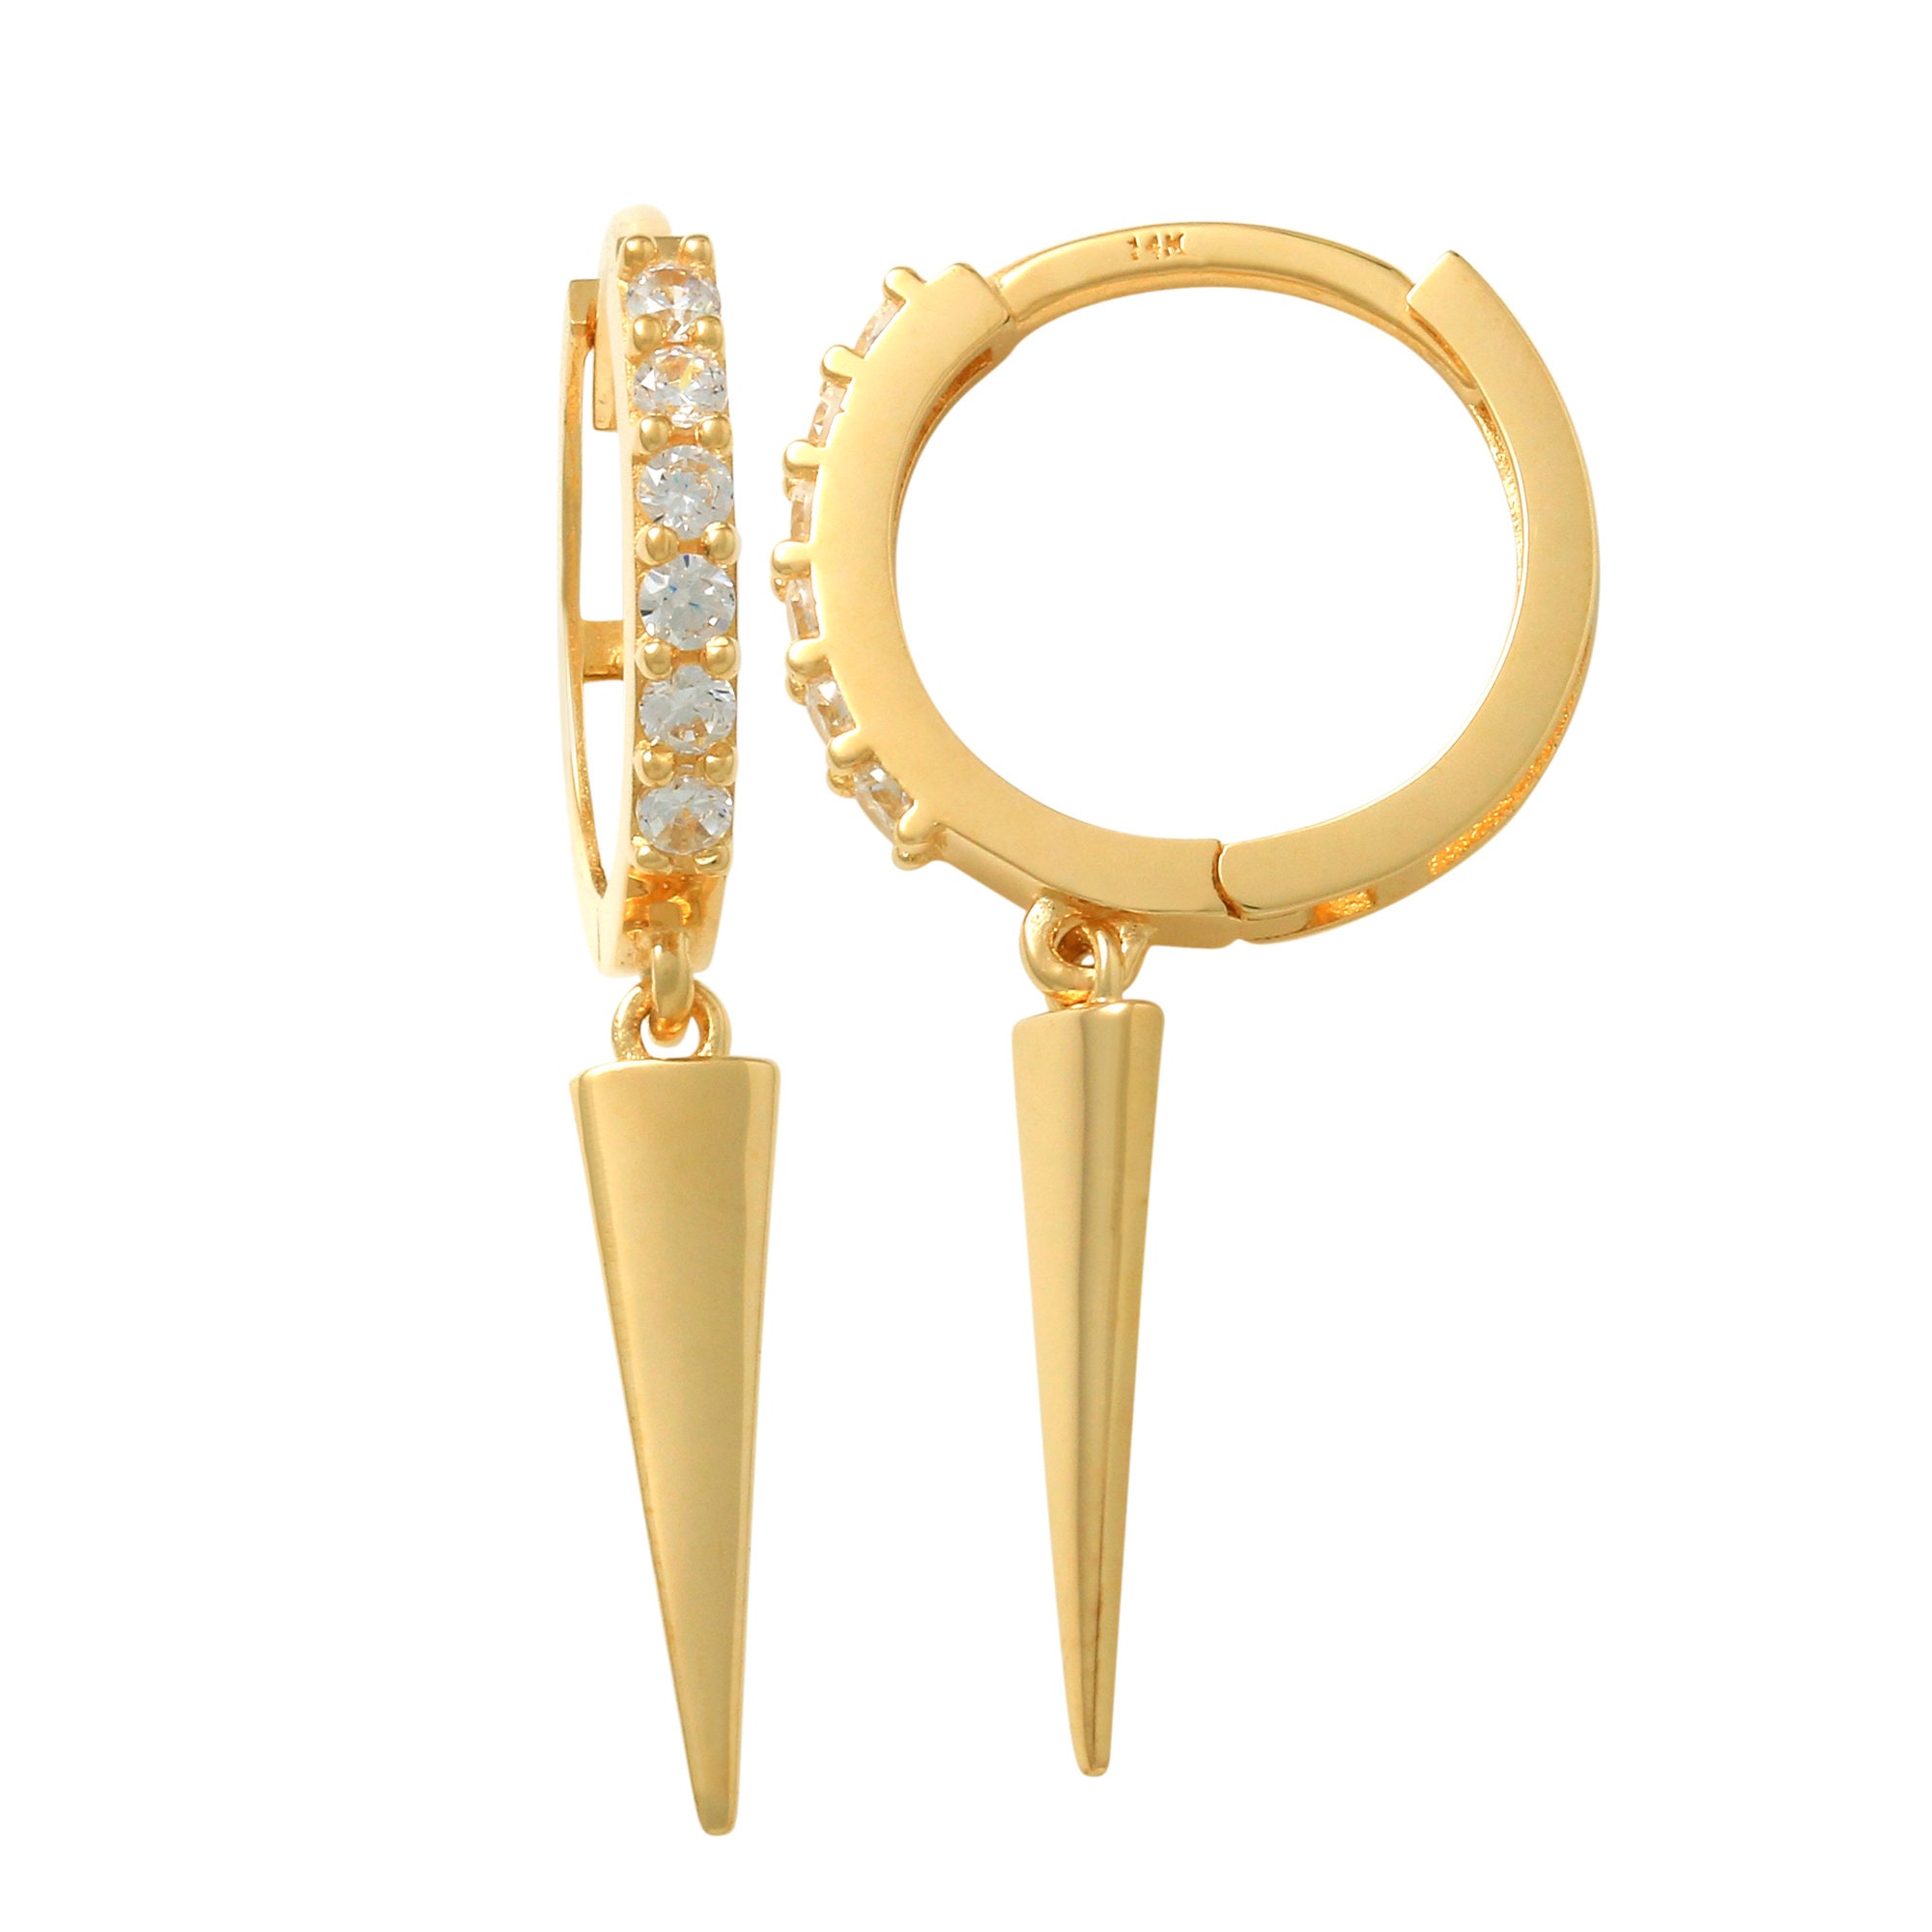 April May June — Gold Holes (Big), Zipper Pull Earrings